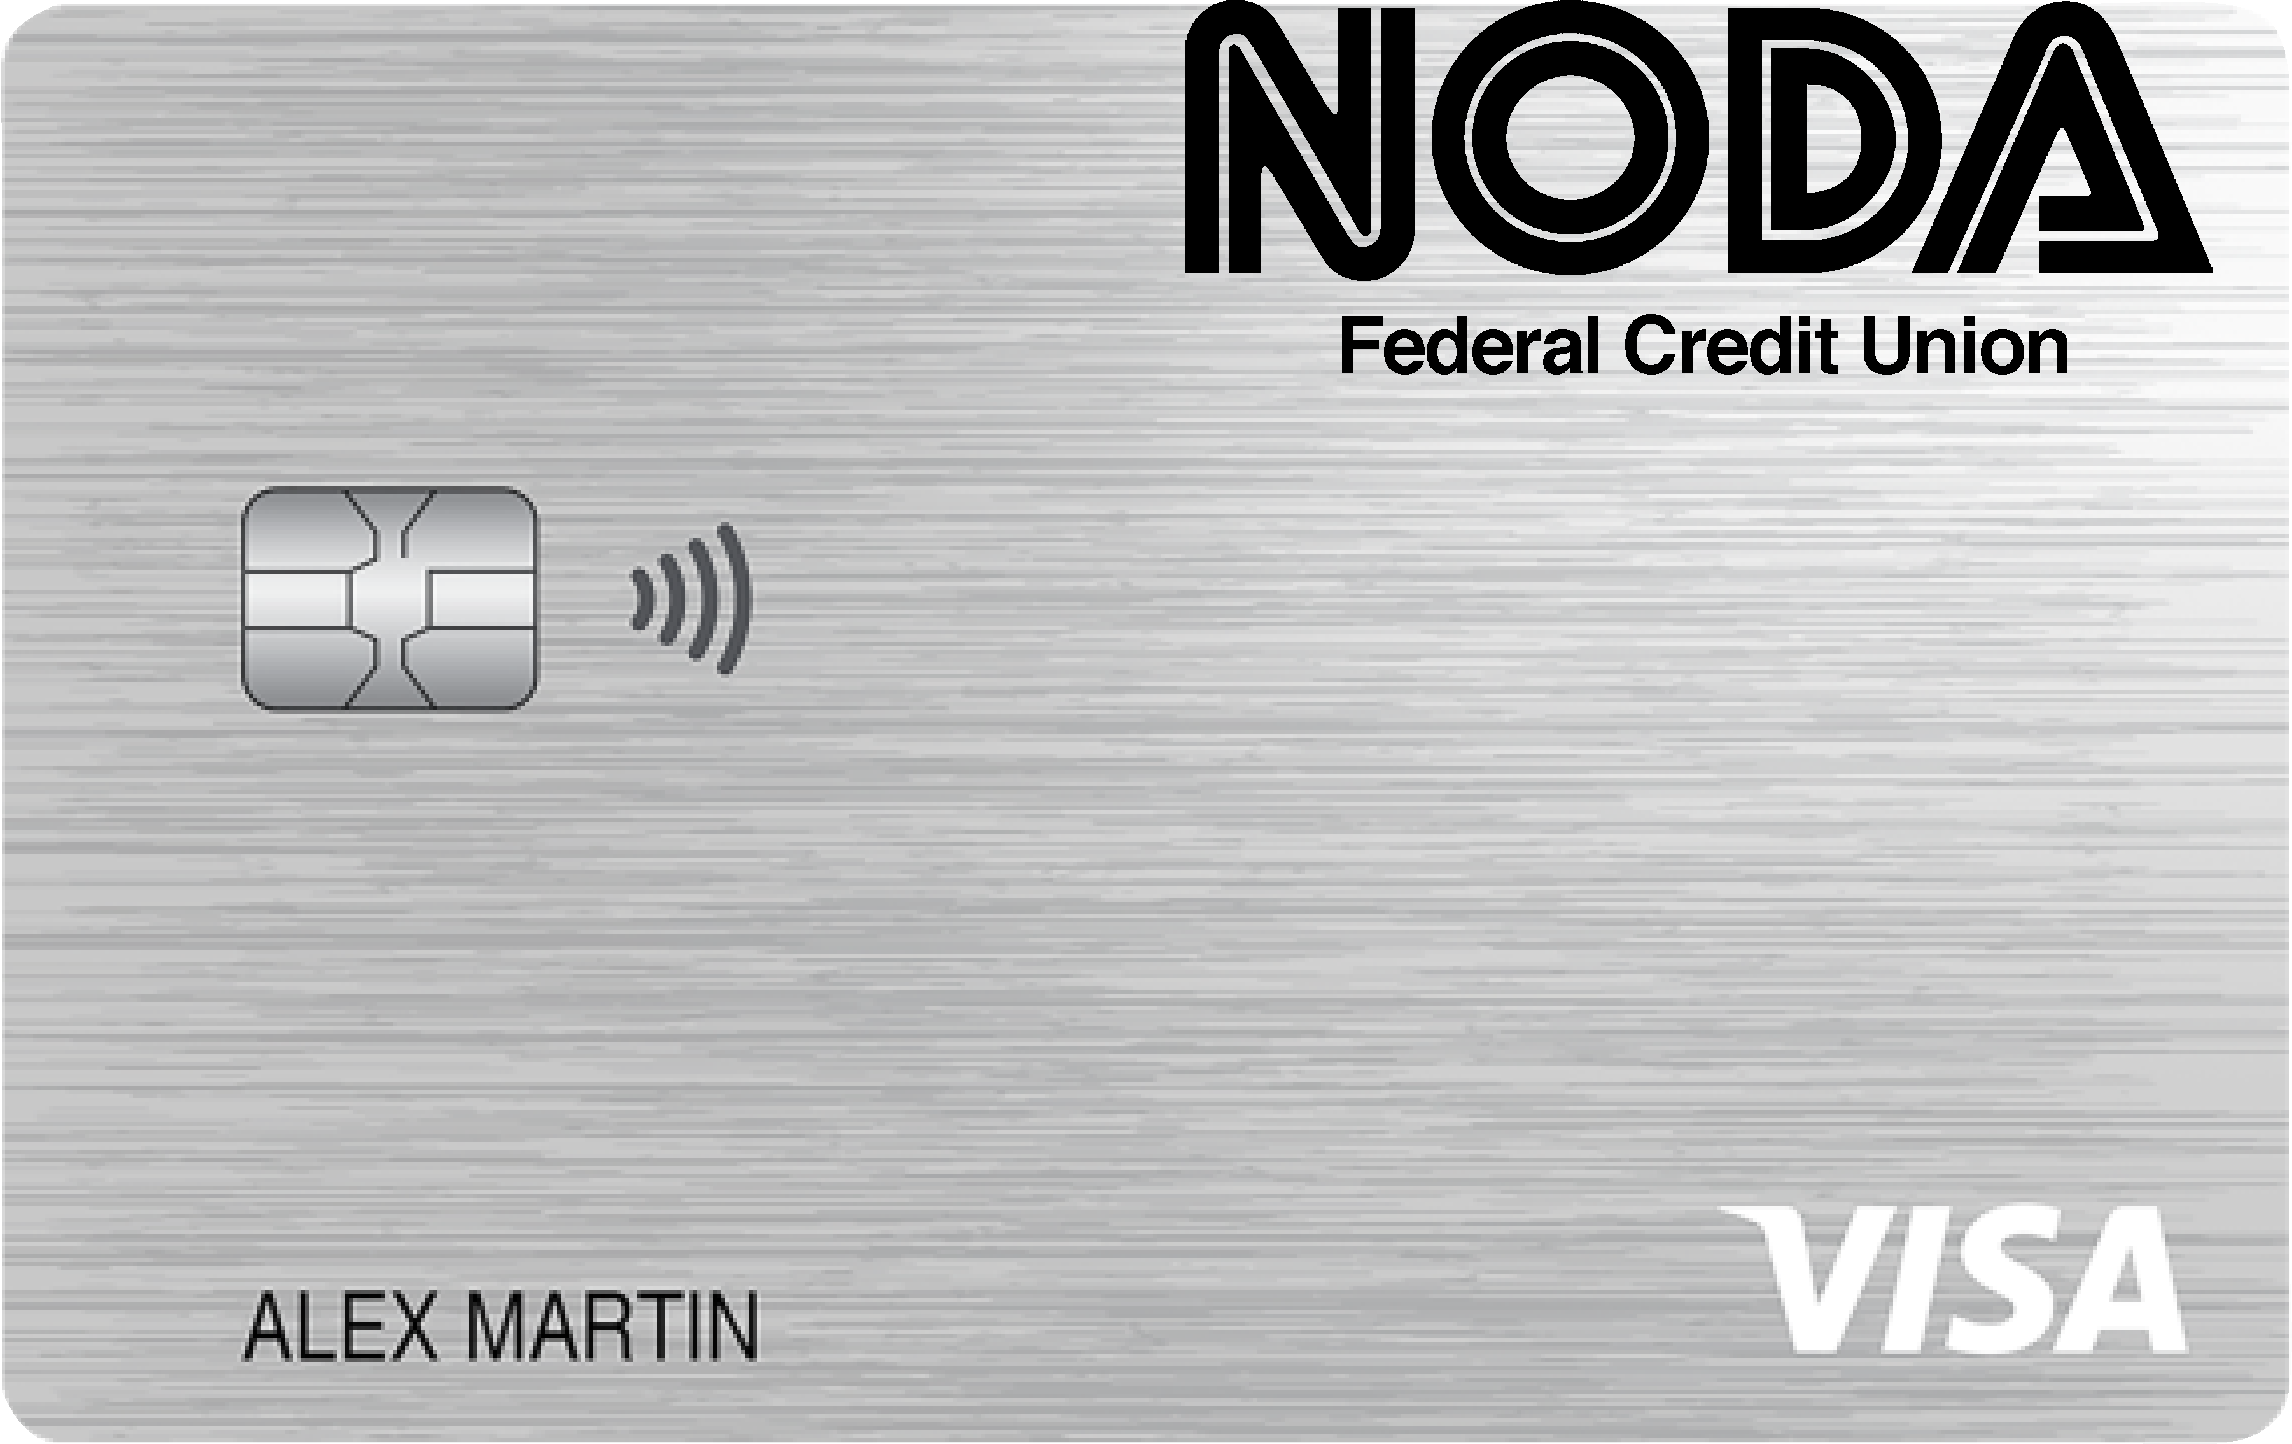 NODA Federal Credit Union